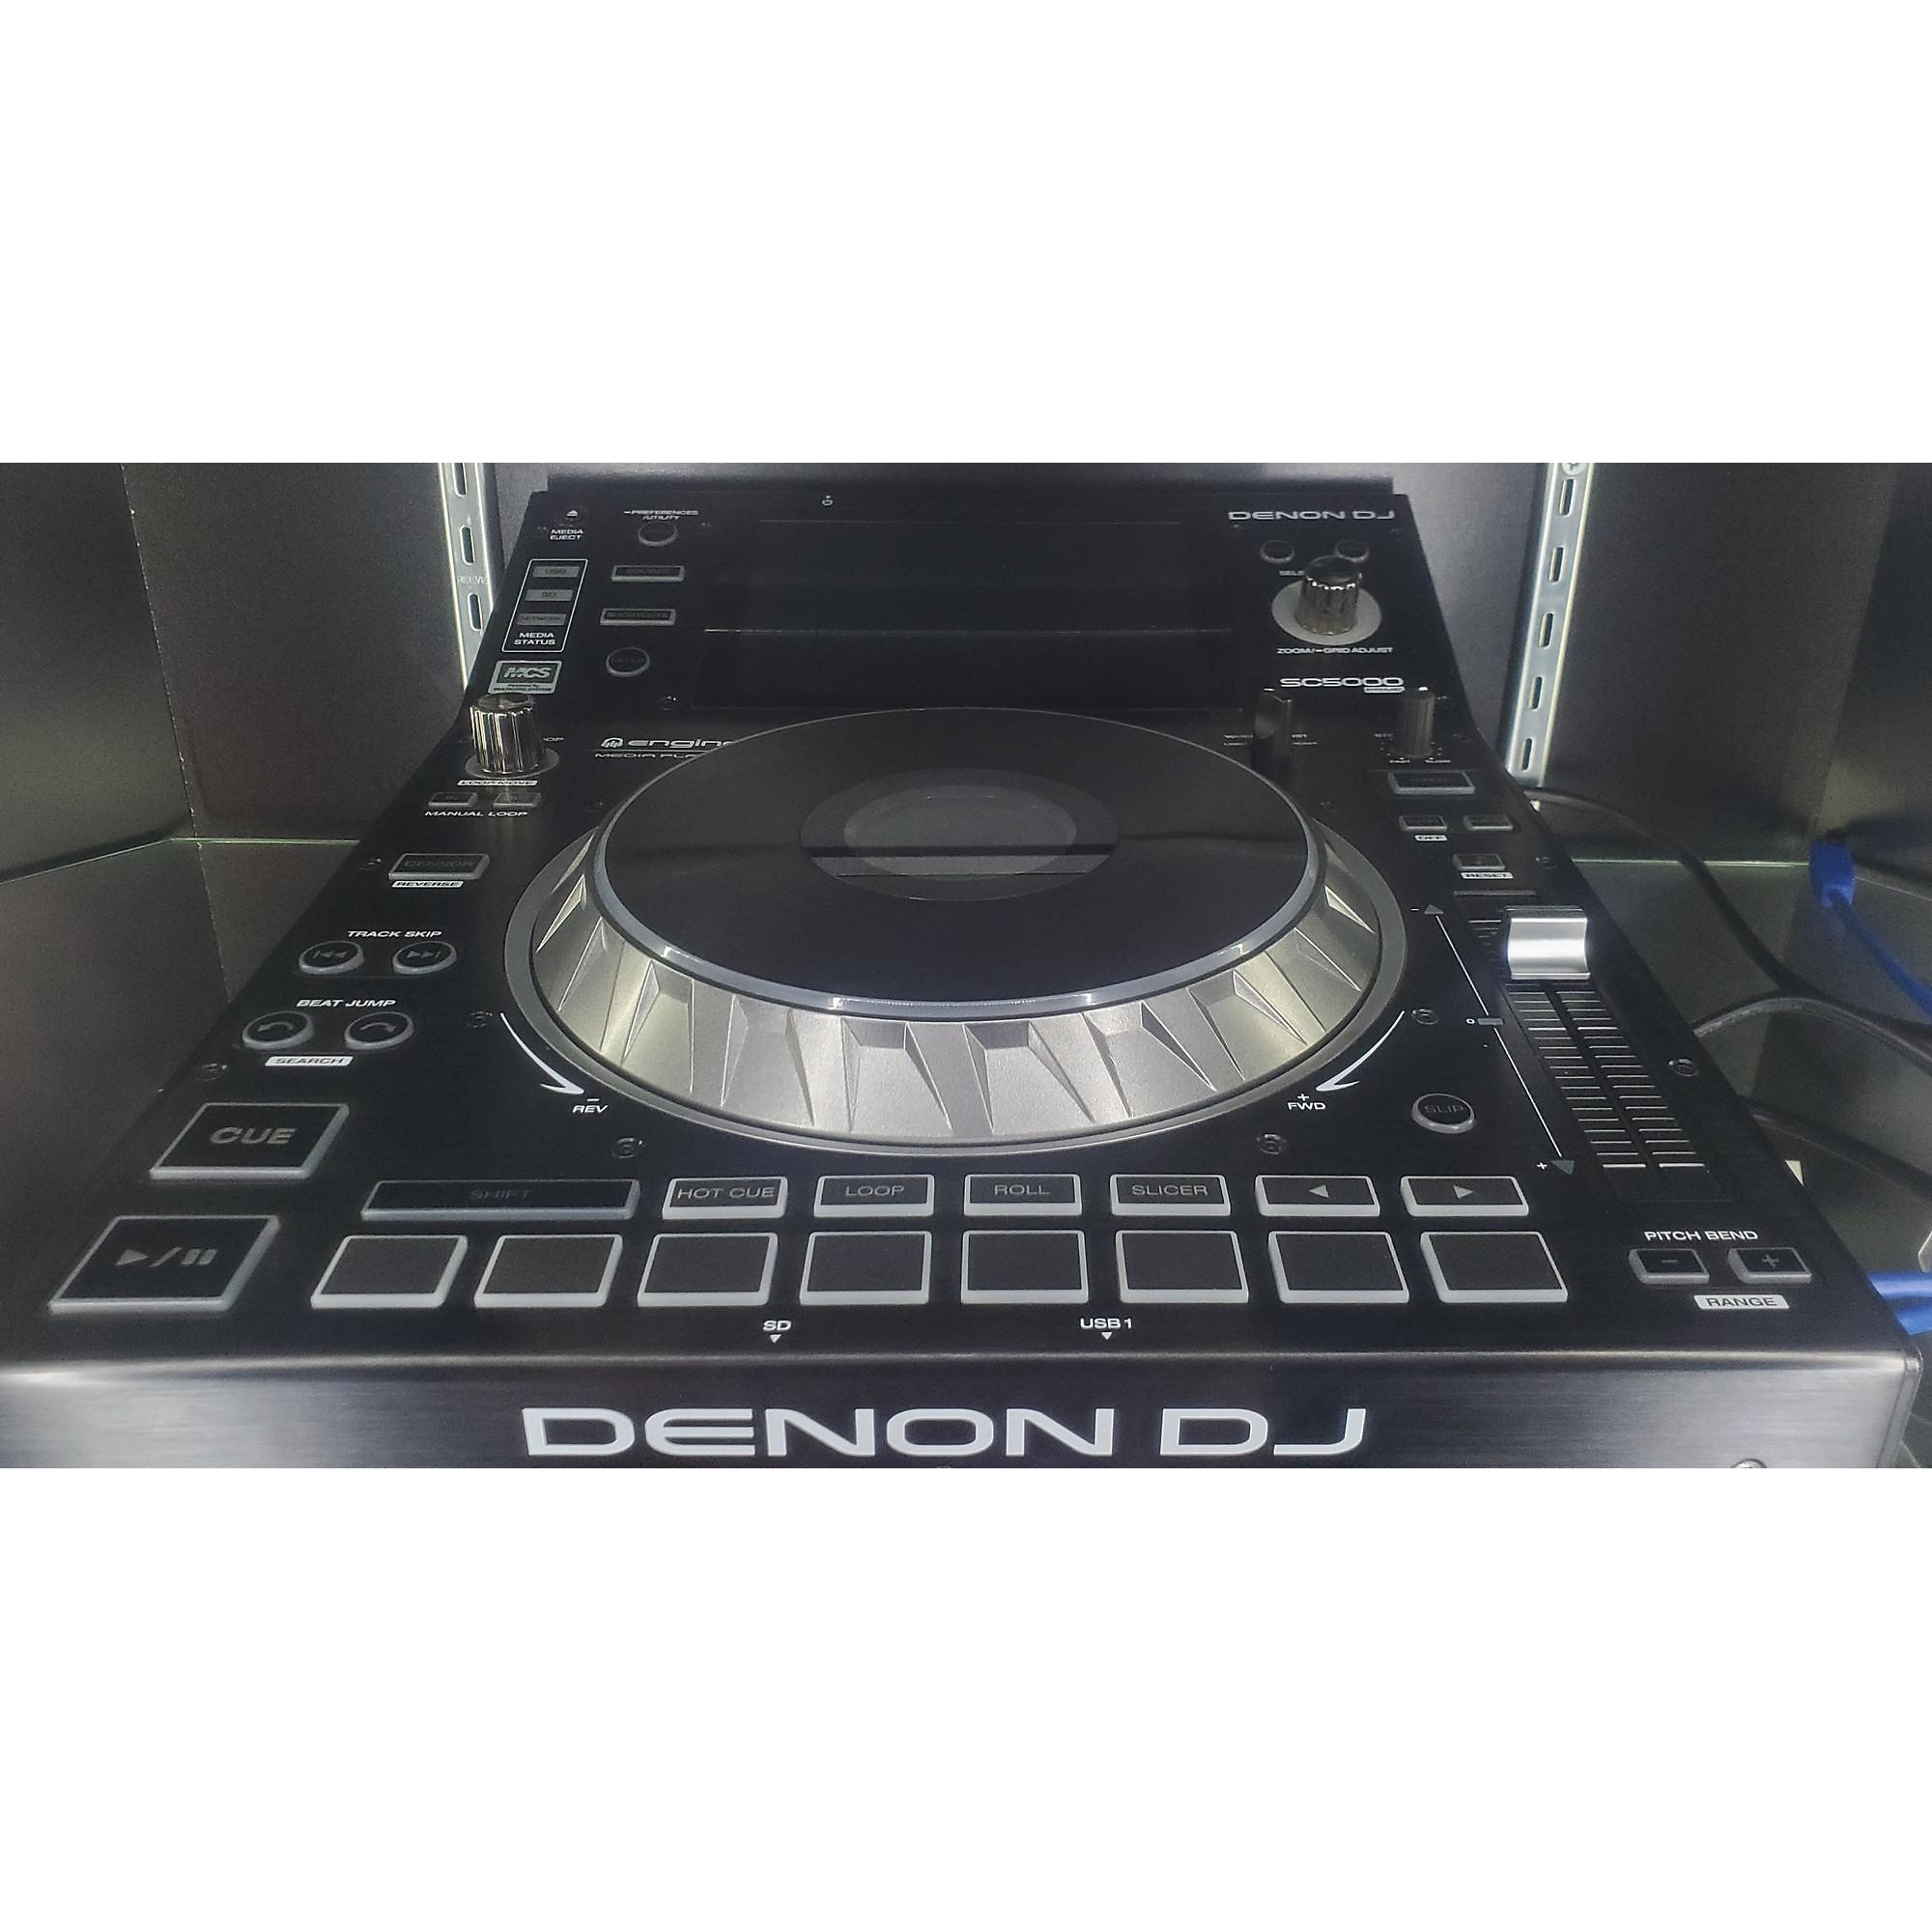 DENON MCX8000 DJ CONTROLLER Controladora DJ